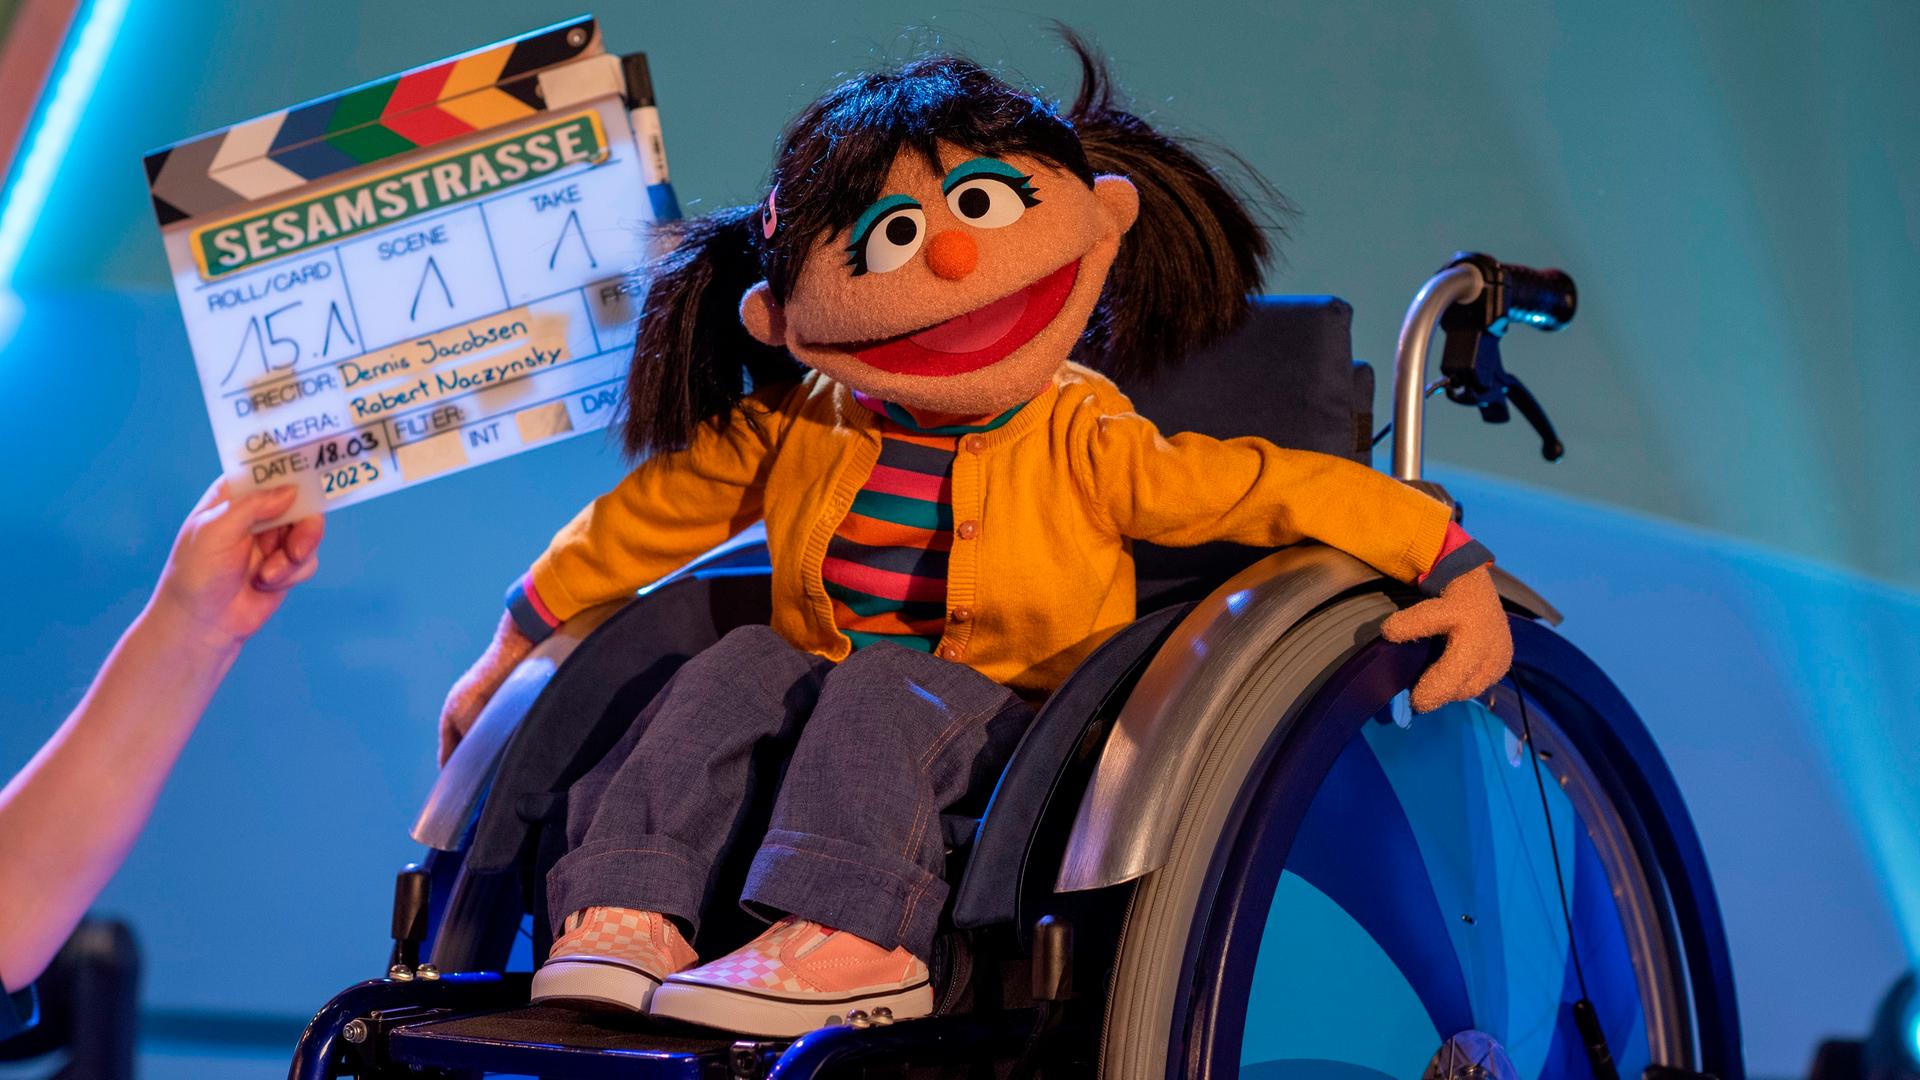 Eine Puppe aus der Sesamstraße, ein Mädchen mit Zöpfen, sitzt im Rollstuhl. 